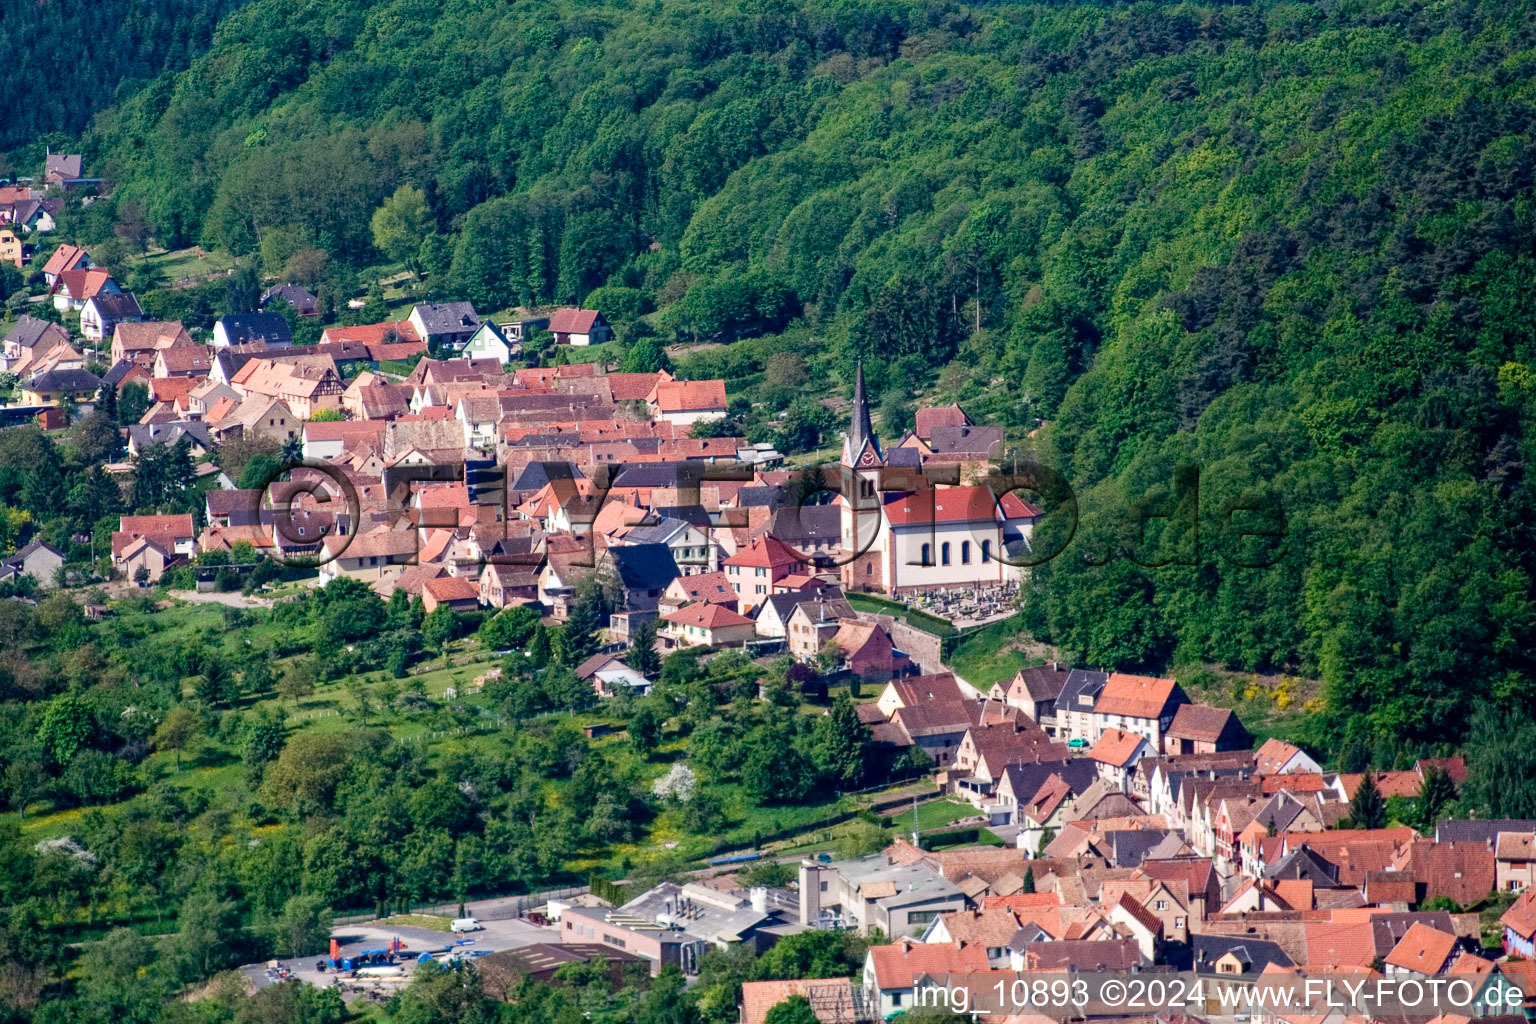 Luftbild von Dorf - Ansicht am Rande von landwirtschaftlichen Feldern und Nutzflächen in Saint-Jean-Saverne in Grand Est im Bundesland Bas-Rhin, Frankreich